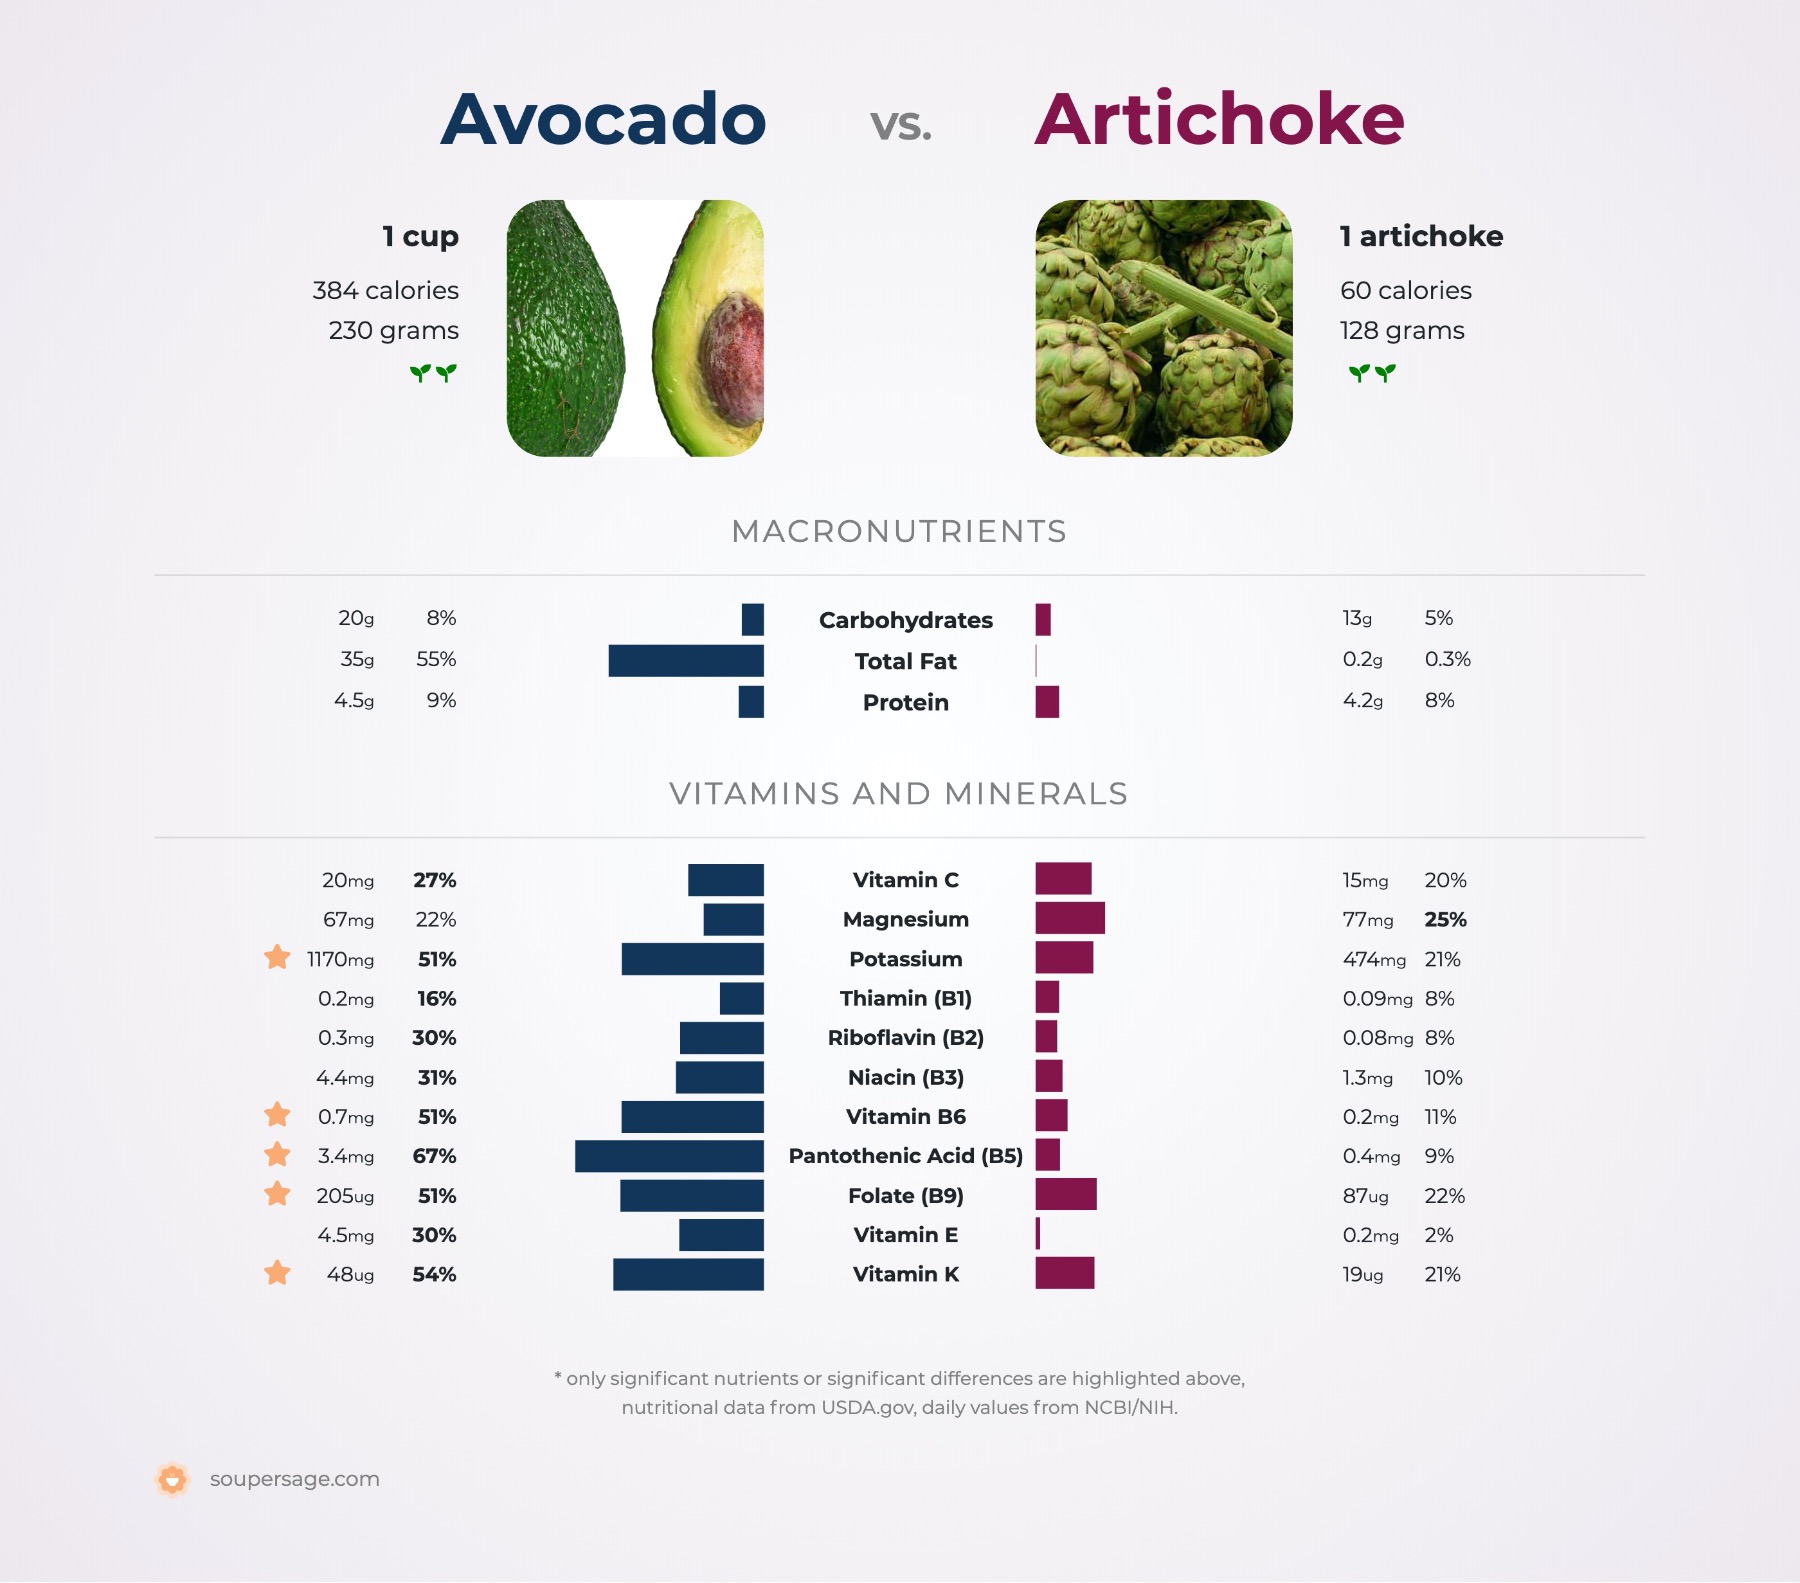 nutrition comparison of avocado vs. artichoke